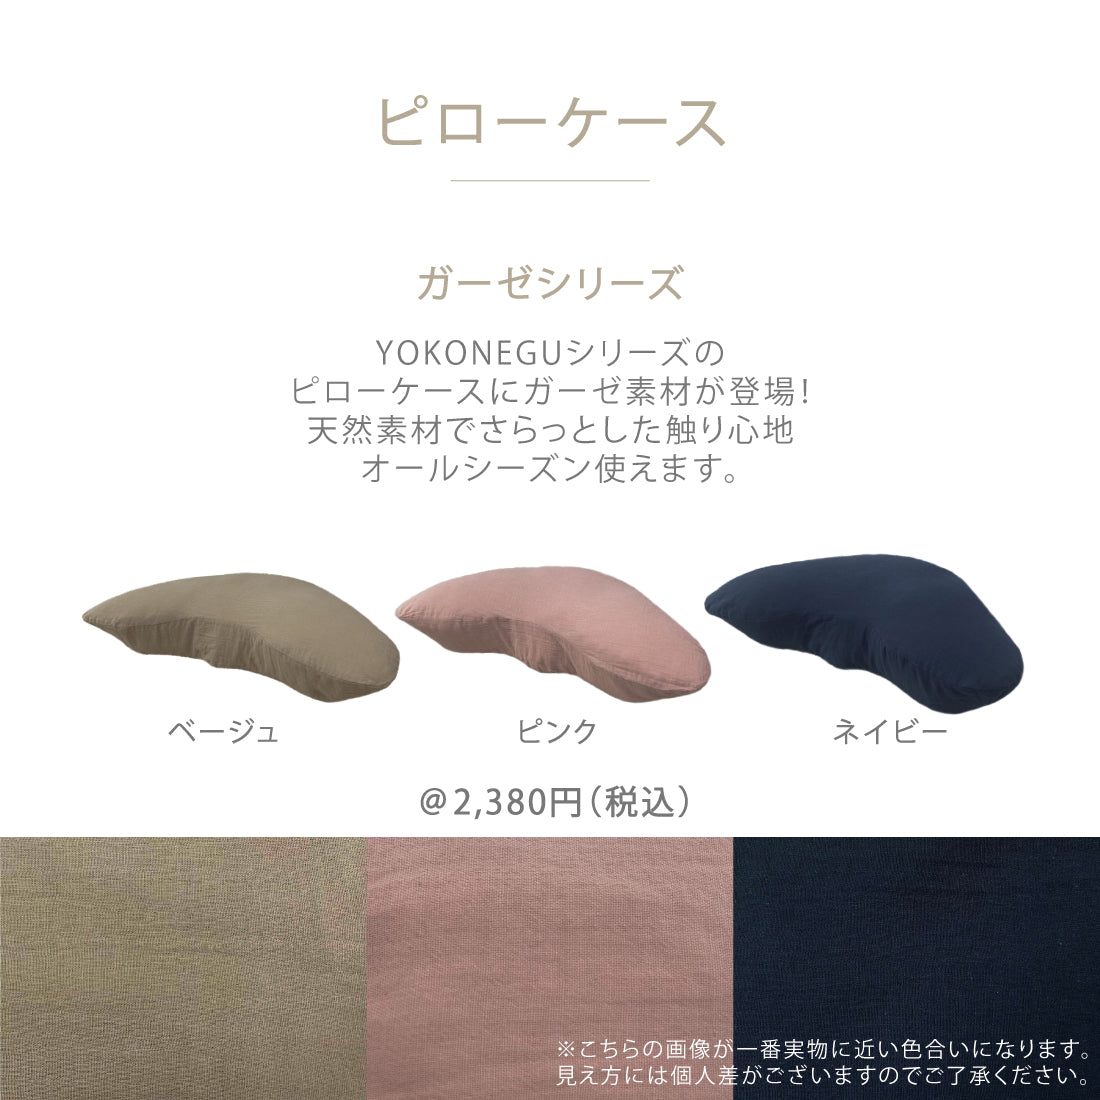 YOKONEGU Premium